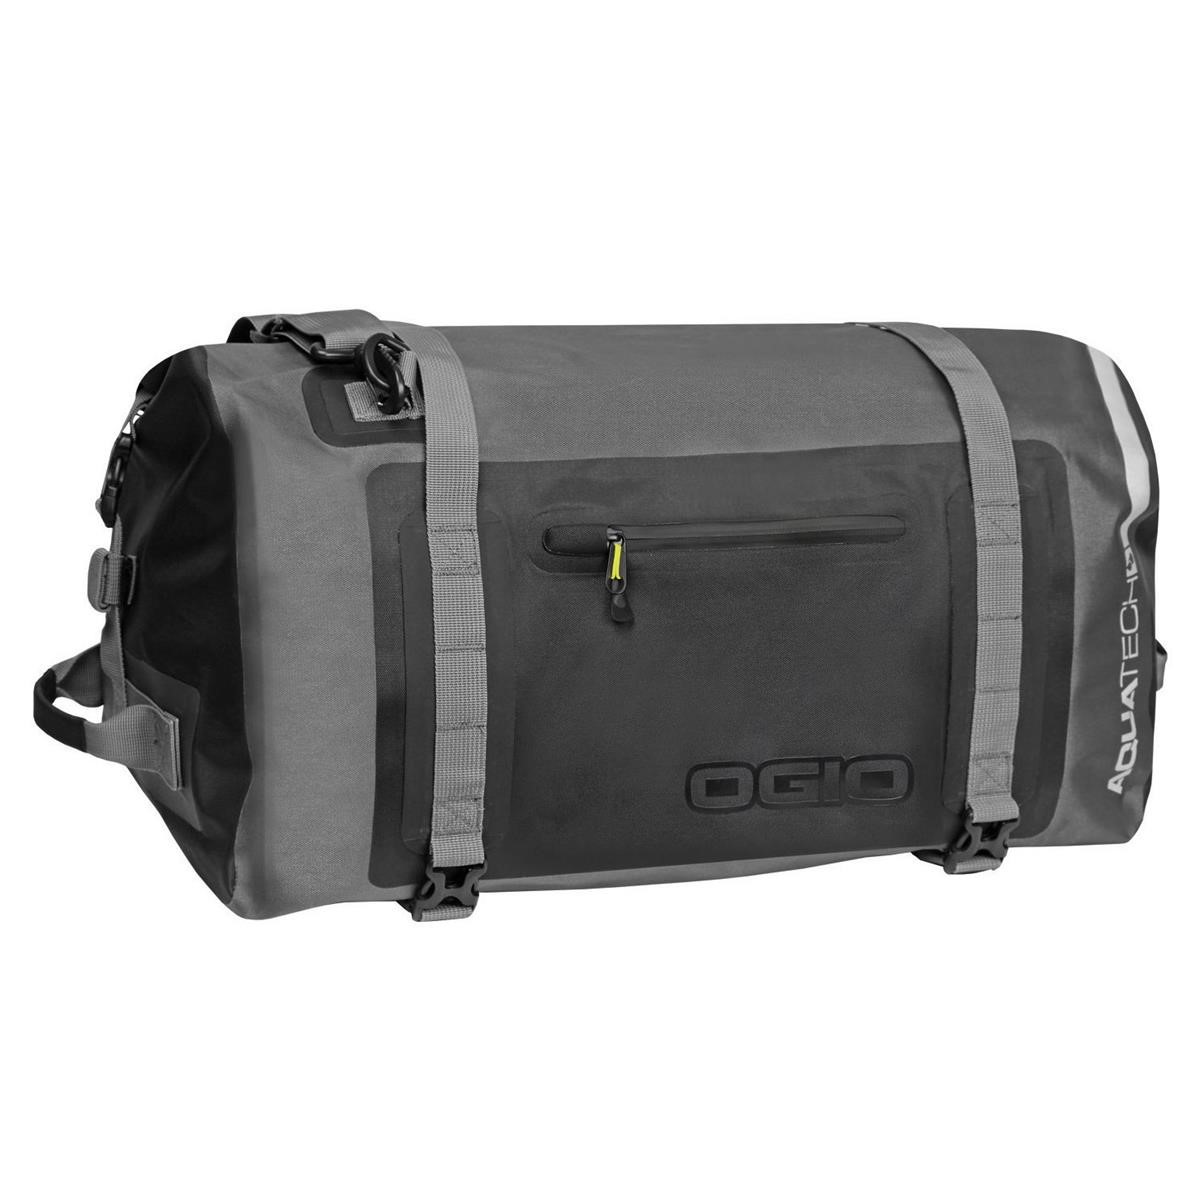 Ogio Travel Bag All Elements 5.0 Stealth, 62 Liter